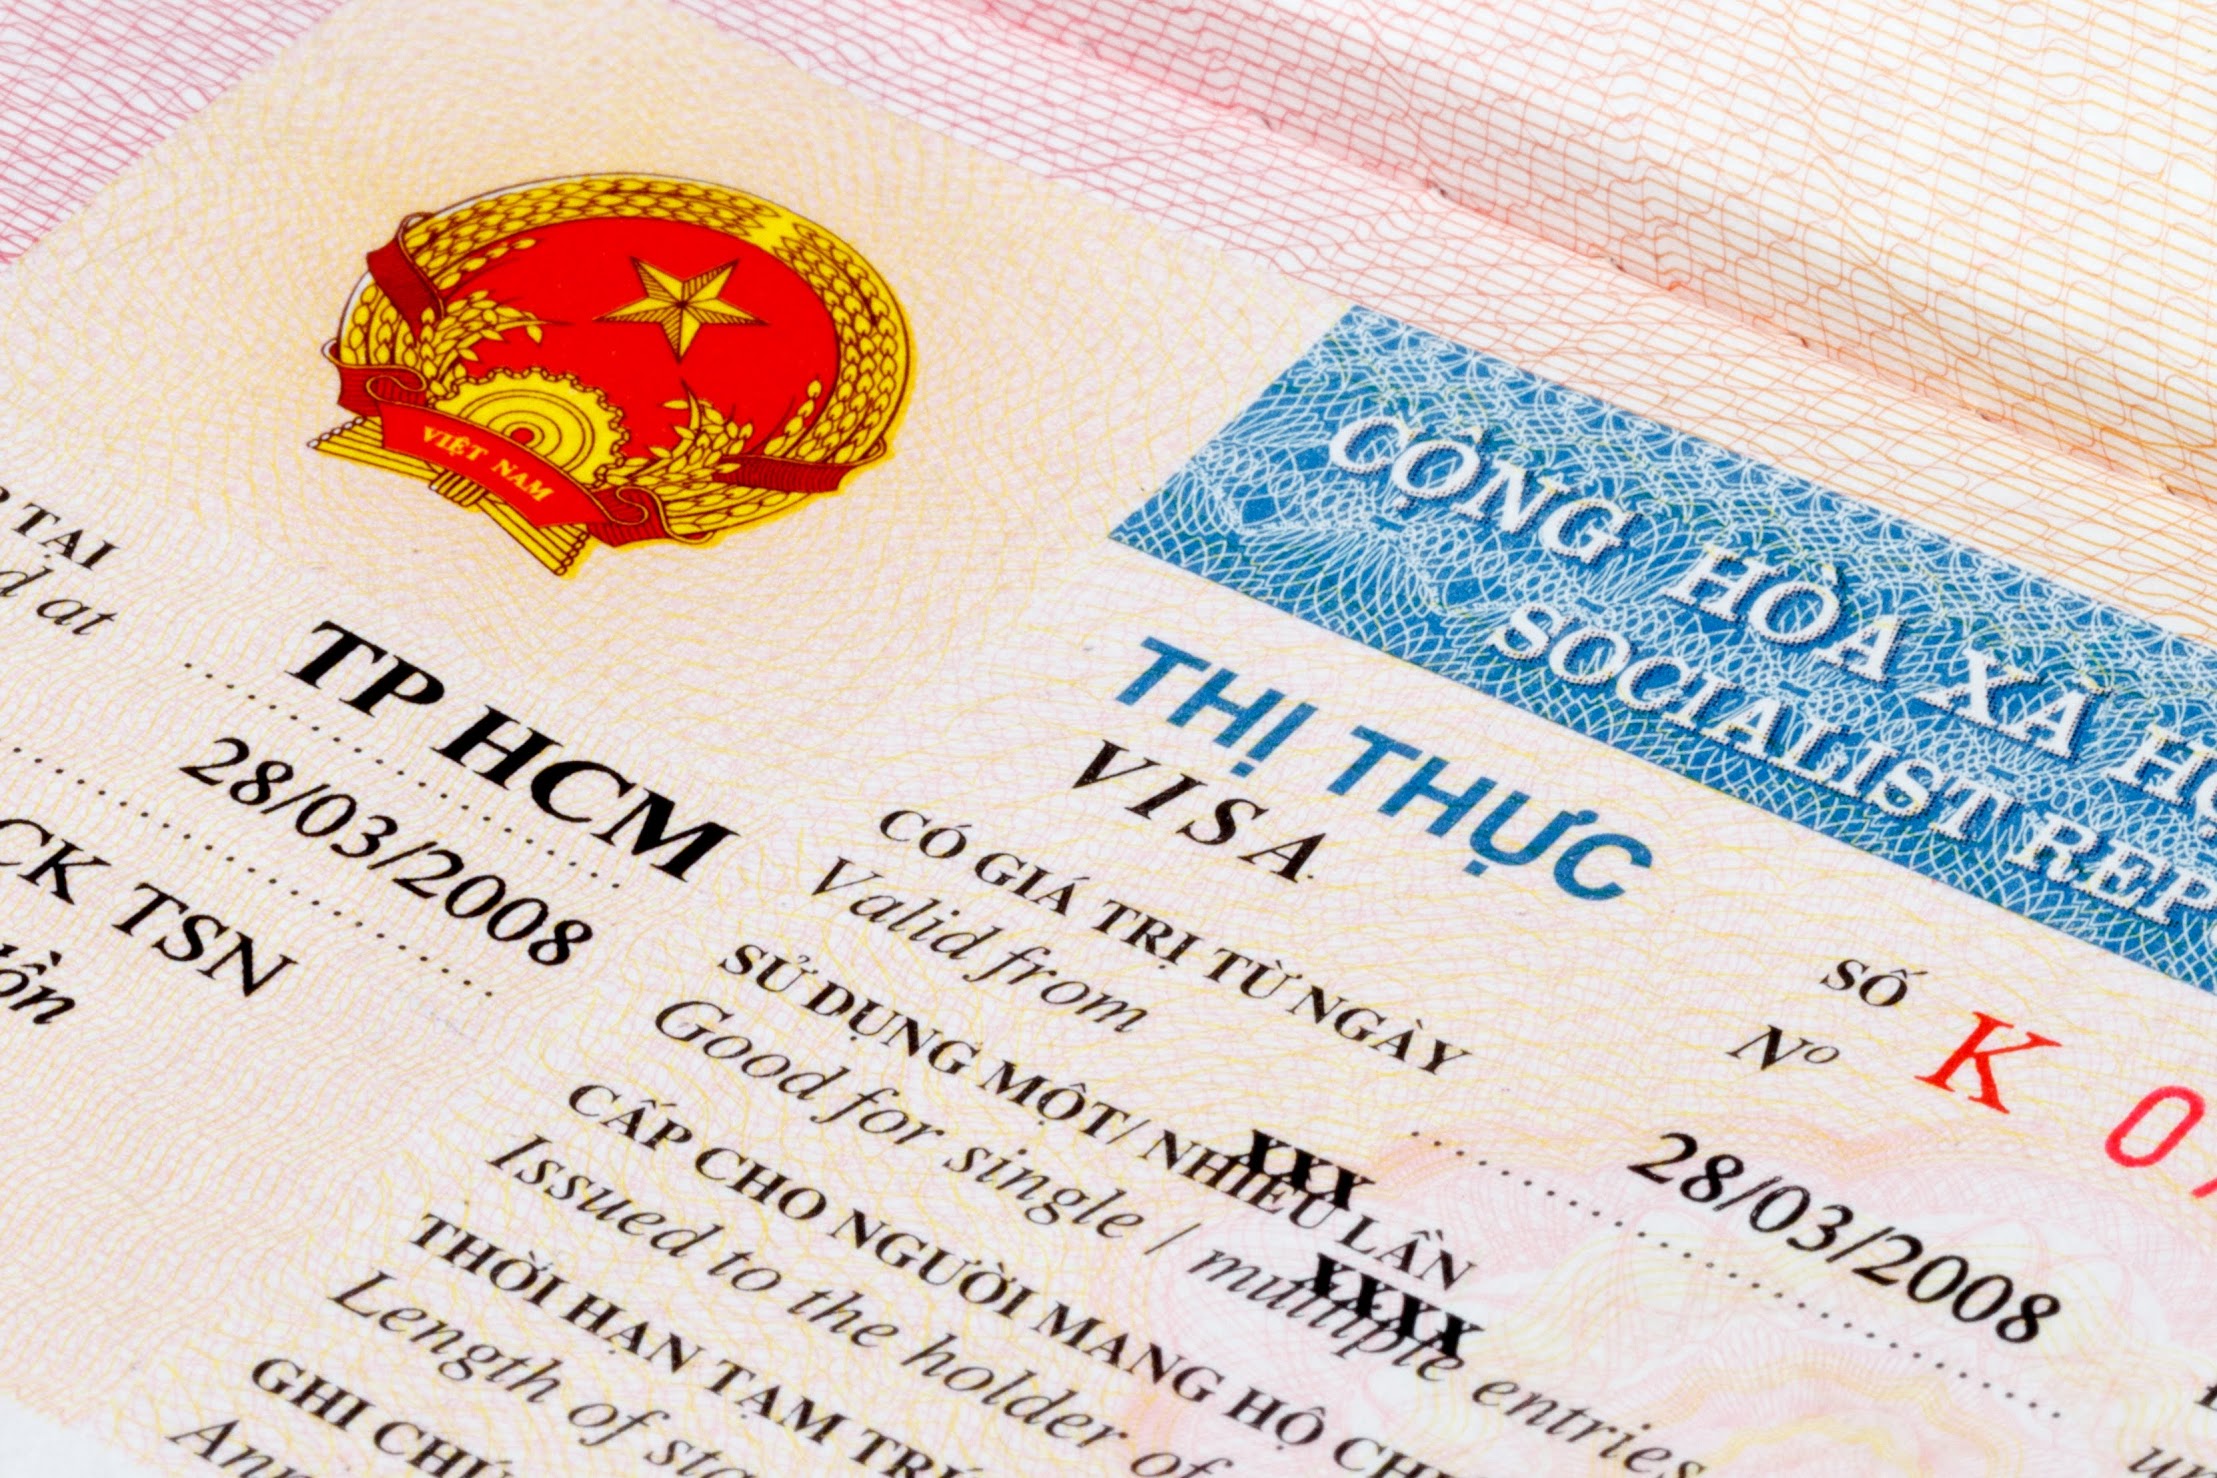 中国人申请越南电子签证的照片要求 2024 | Vietnam eVisa